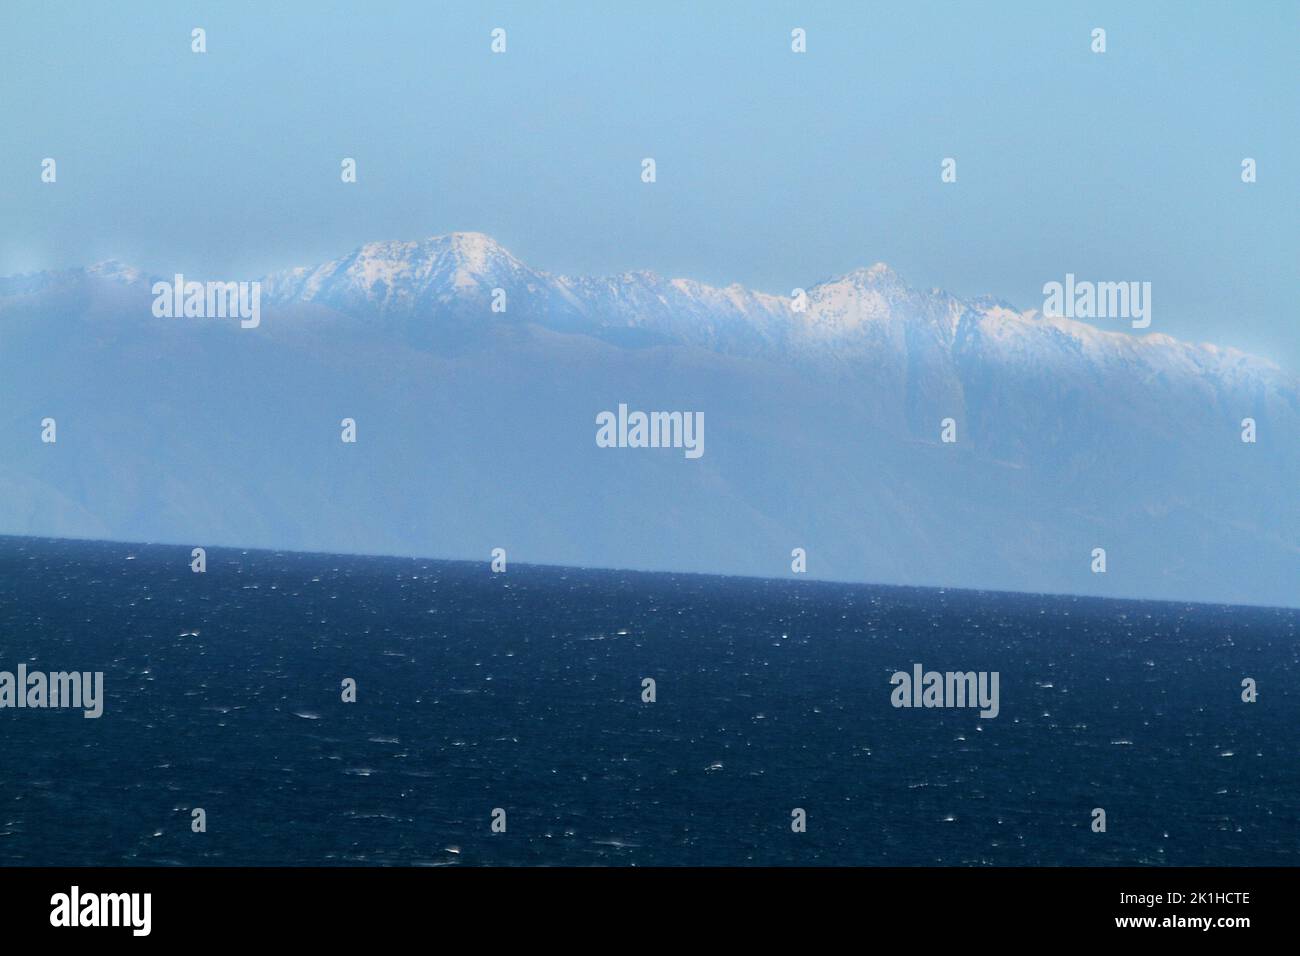 Das albanische Ceraunische Gebirge von der Halbinsel Salento aus gesehen, Italien Stockfoto